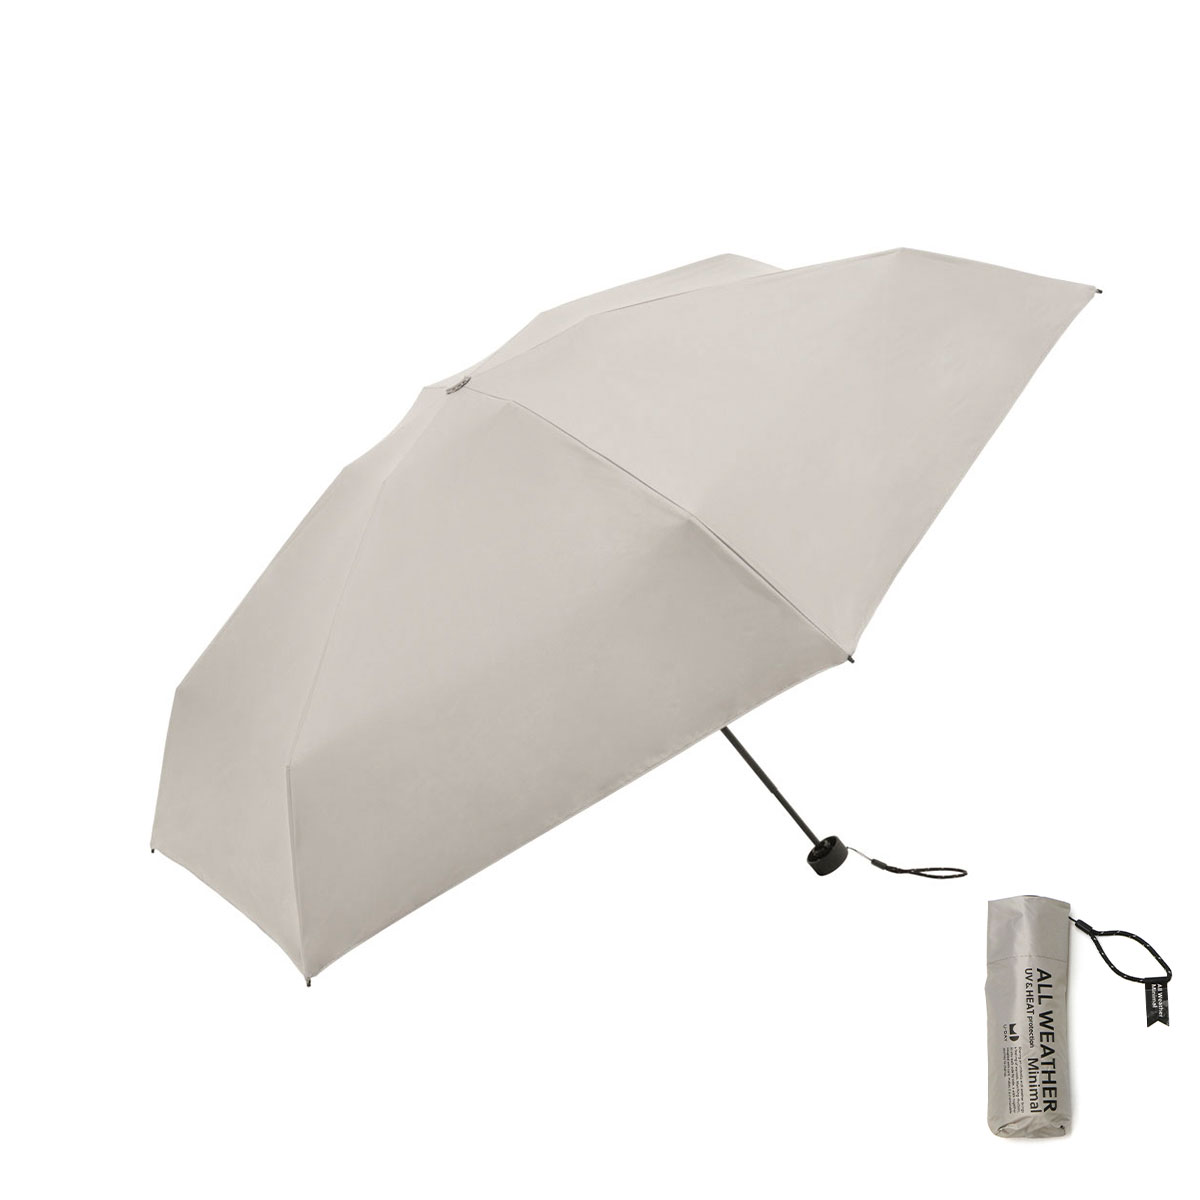 U-DAY 傘 折りたたみ傘 日傘 メンズ レディース 軽量 完全遮光 ユーデイ 小さい 晴雨兼用 ...